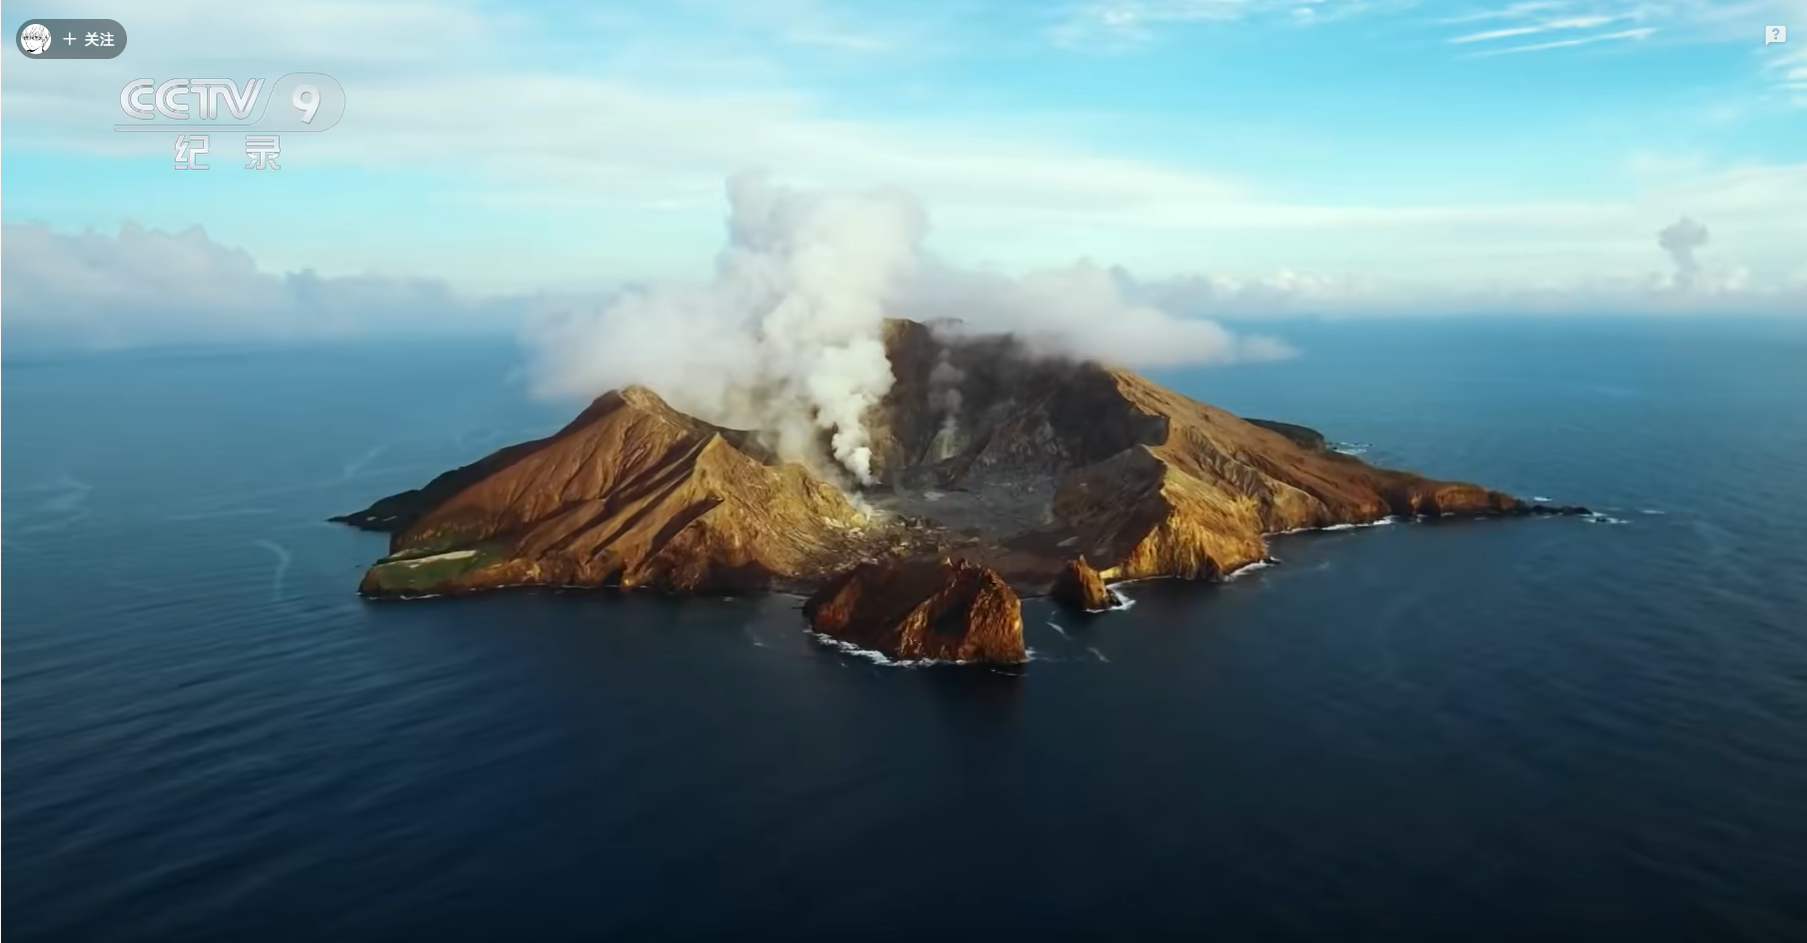 央视纪录片《火山之旅》 感受火山的壮丽景象和神秘气息